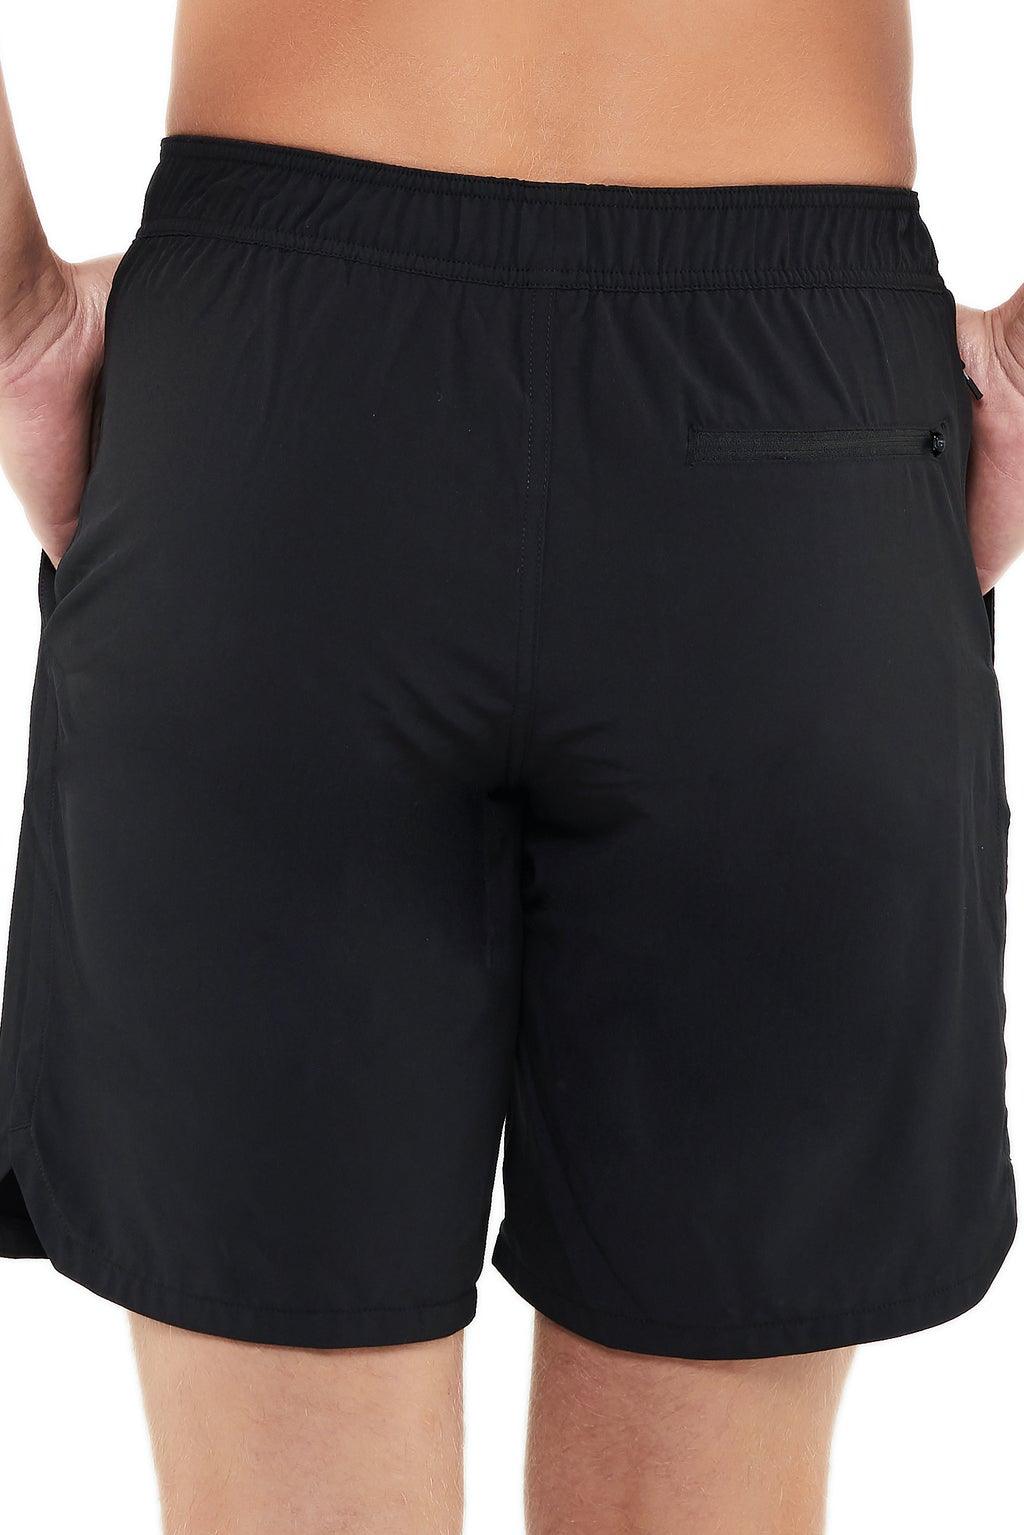 Mens Lined Flow Shorts | Lined Shorts Mens | Sumatra Active